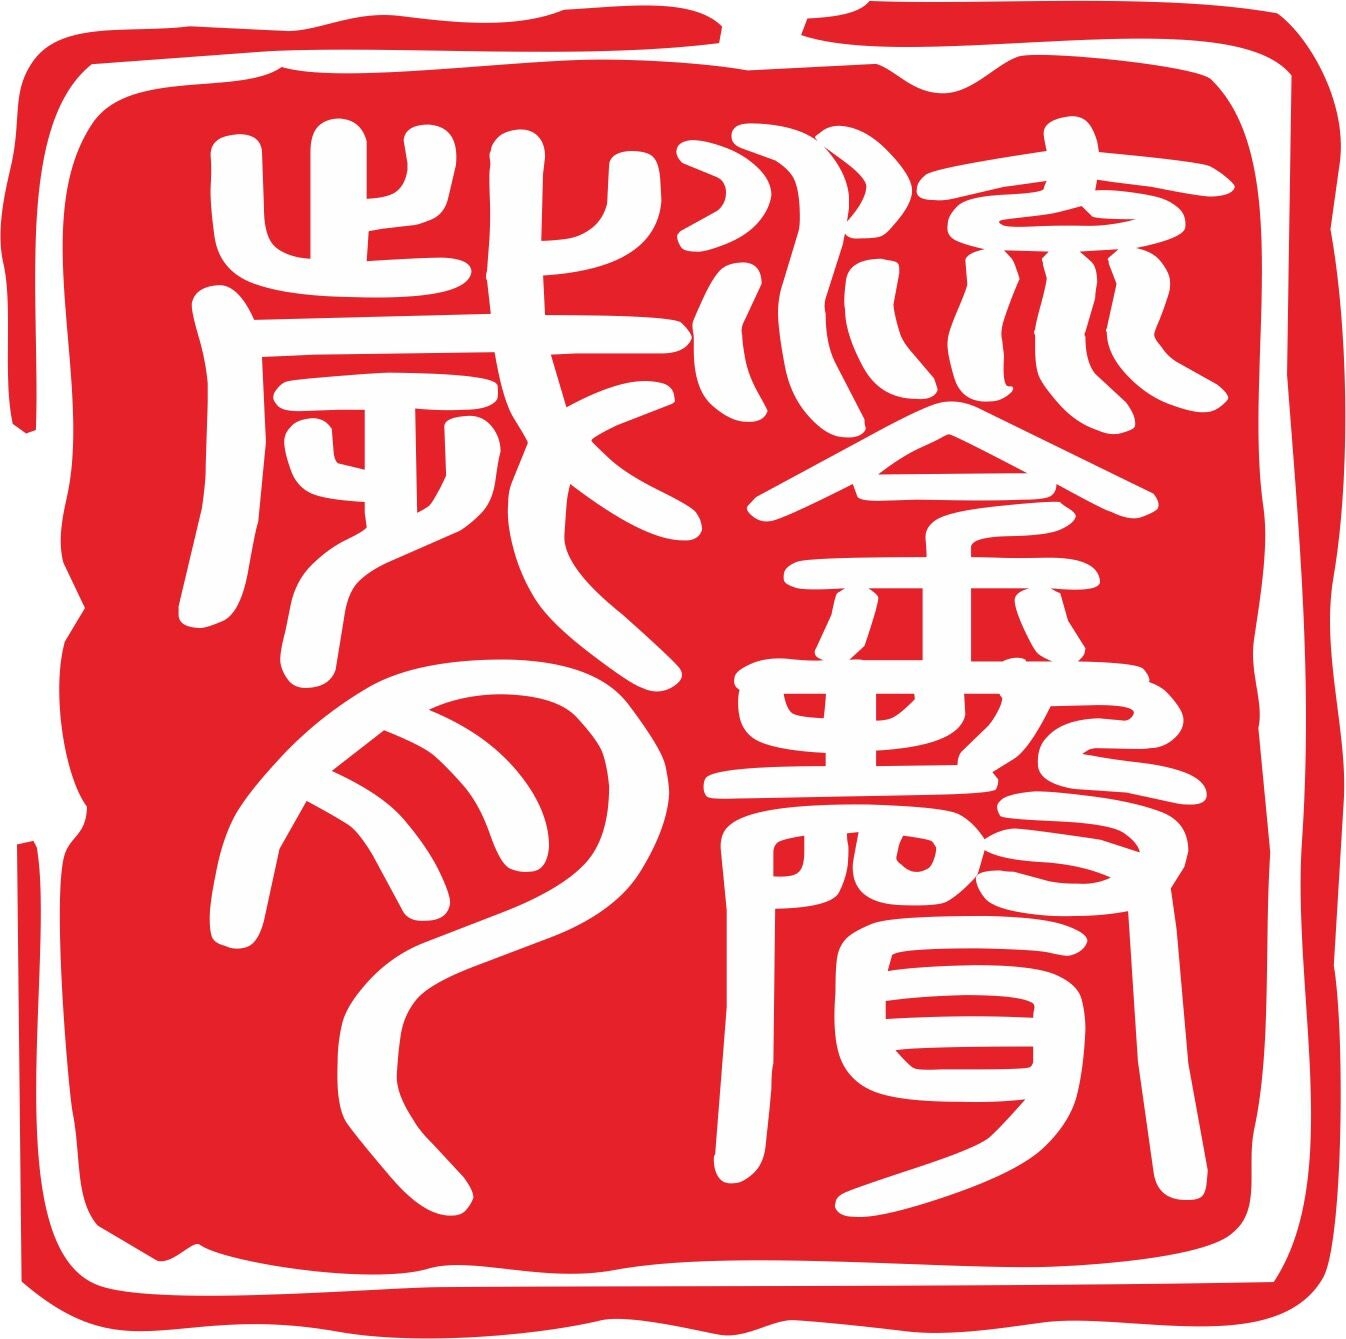 重庆鎏声岁月汽车影音5S店 Logo